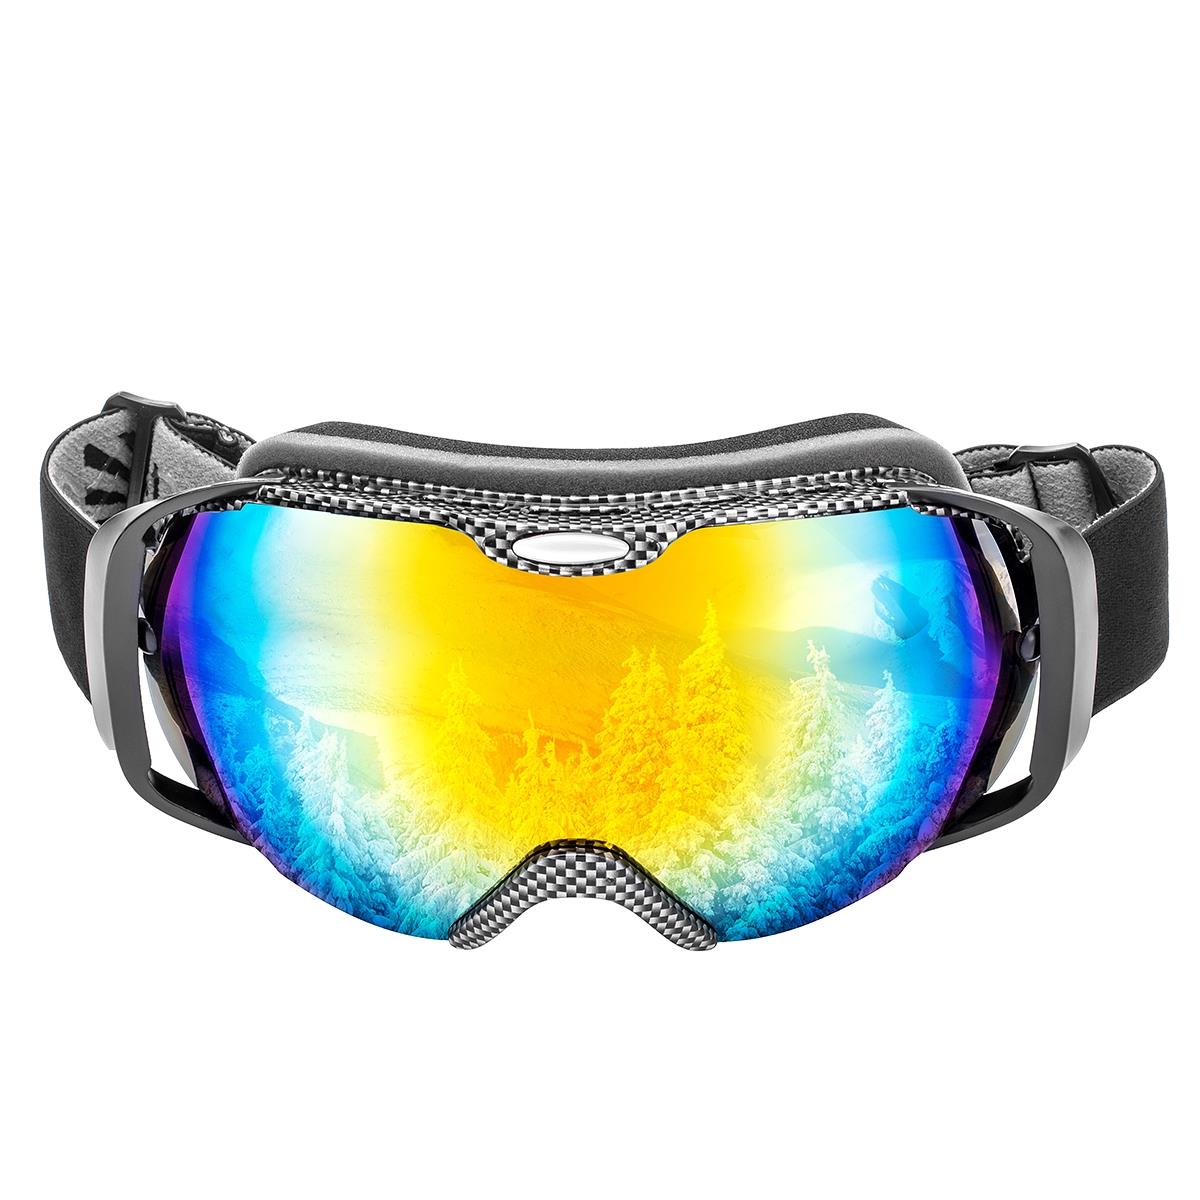 Очки горнолыжные HS-HX-012 Helios очки полумаска для плавания с берушами детские uv защита